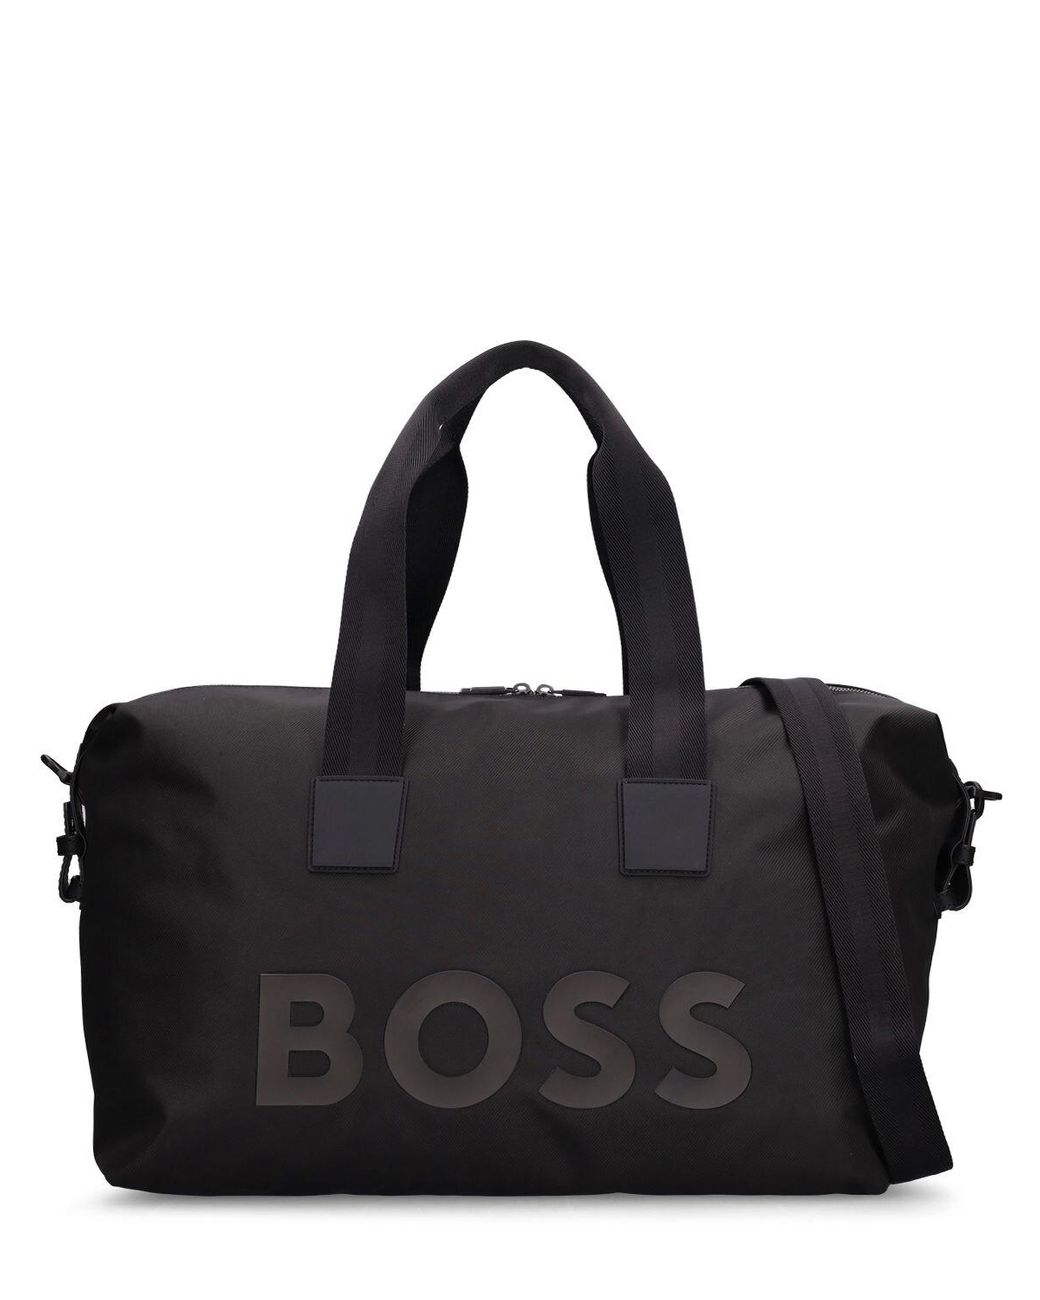 BOSS by HUGO BOSS Catch Logo Duffle Bag in Black for Men | Lyst UK